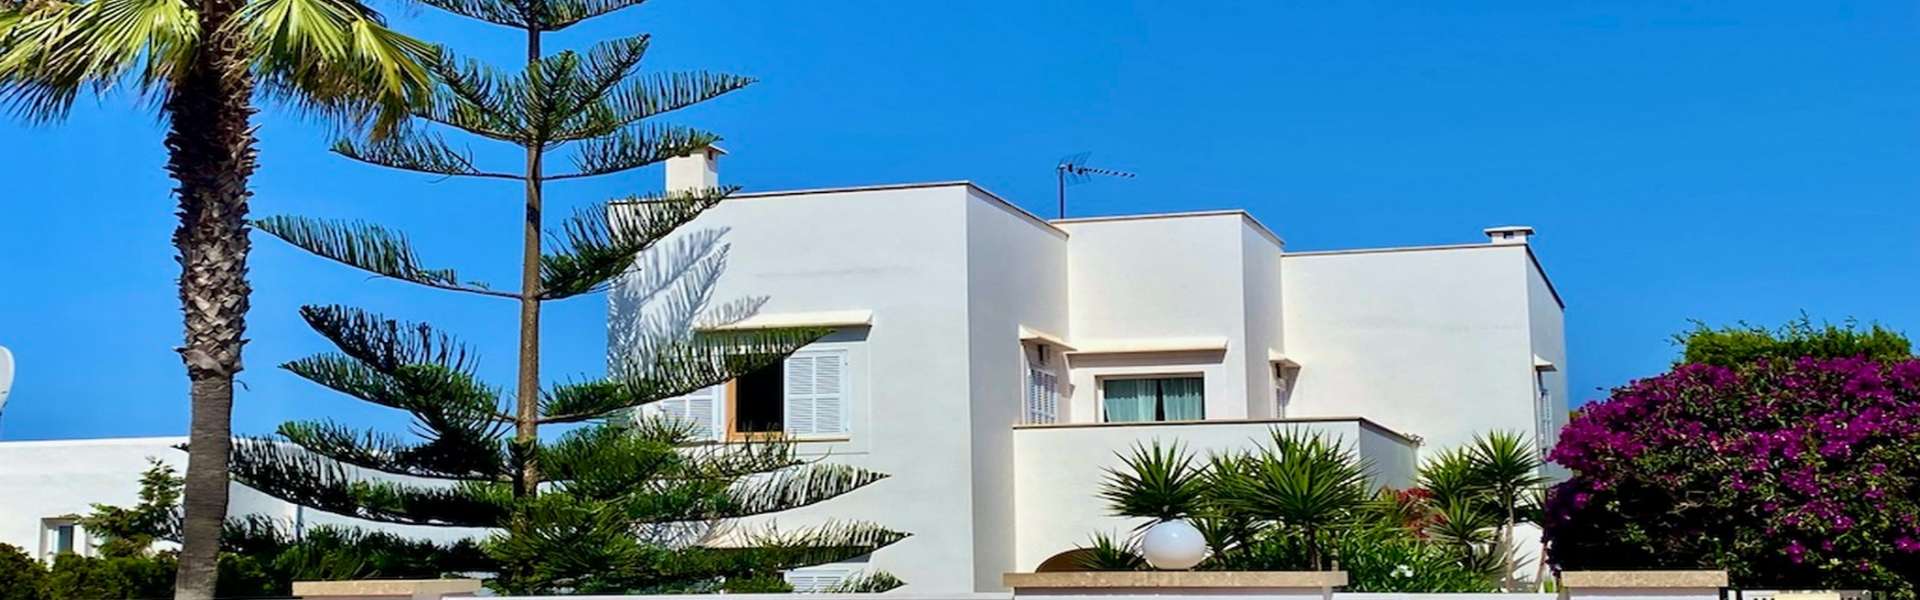 Exklusive Villa mit Ferienvermietungslizenz in Cala d'Or/Punta des Port 